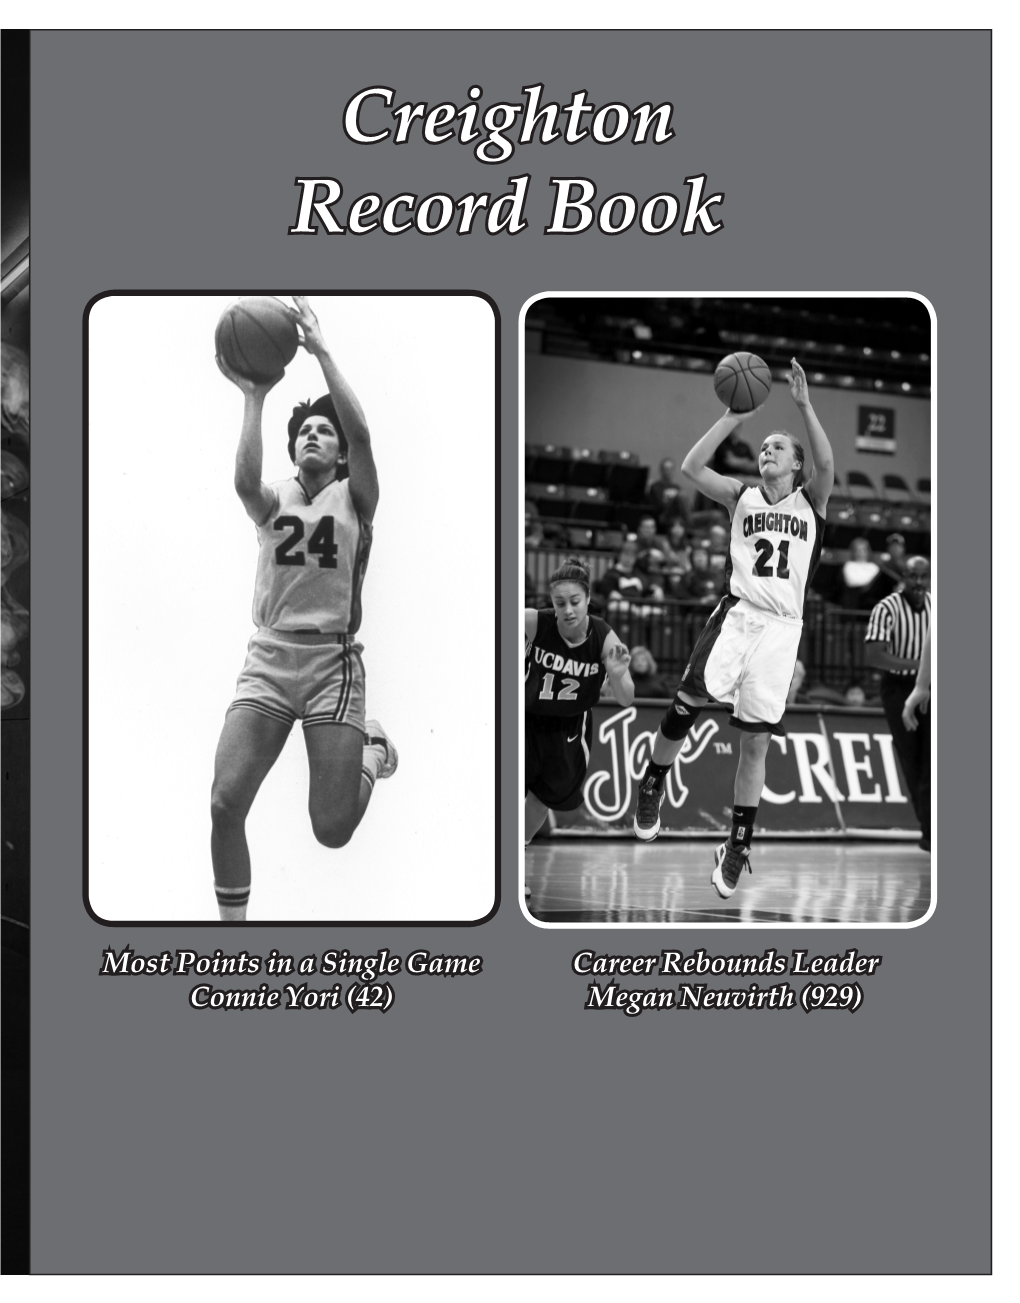 Creighton Record Book Divider Creighton Record Book